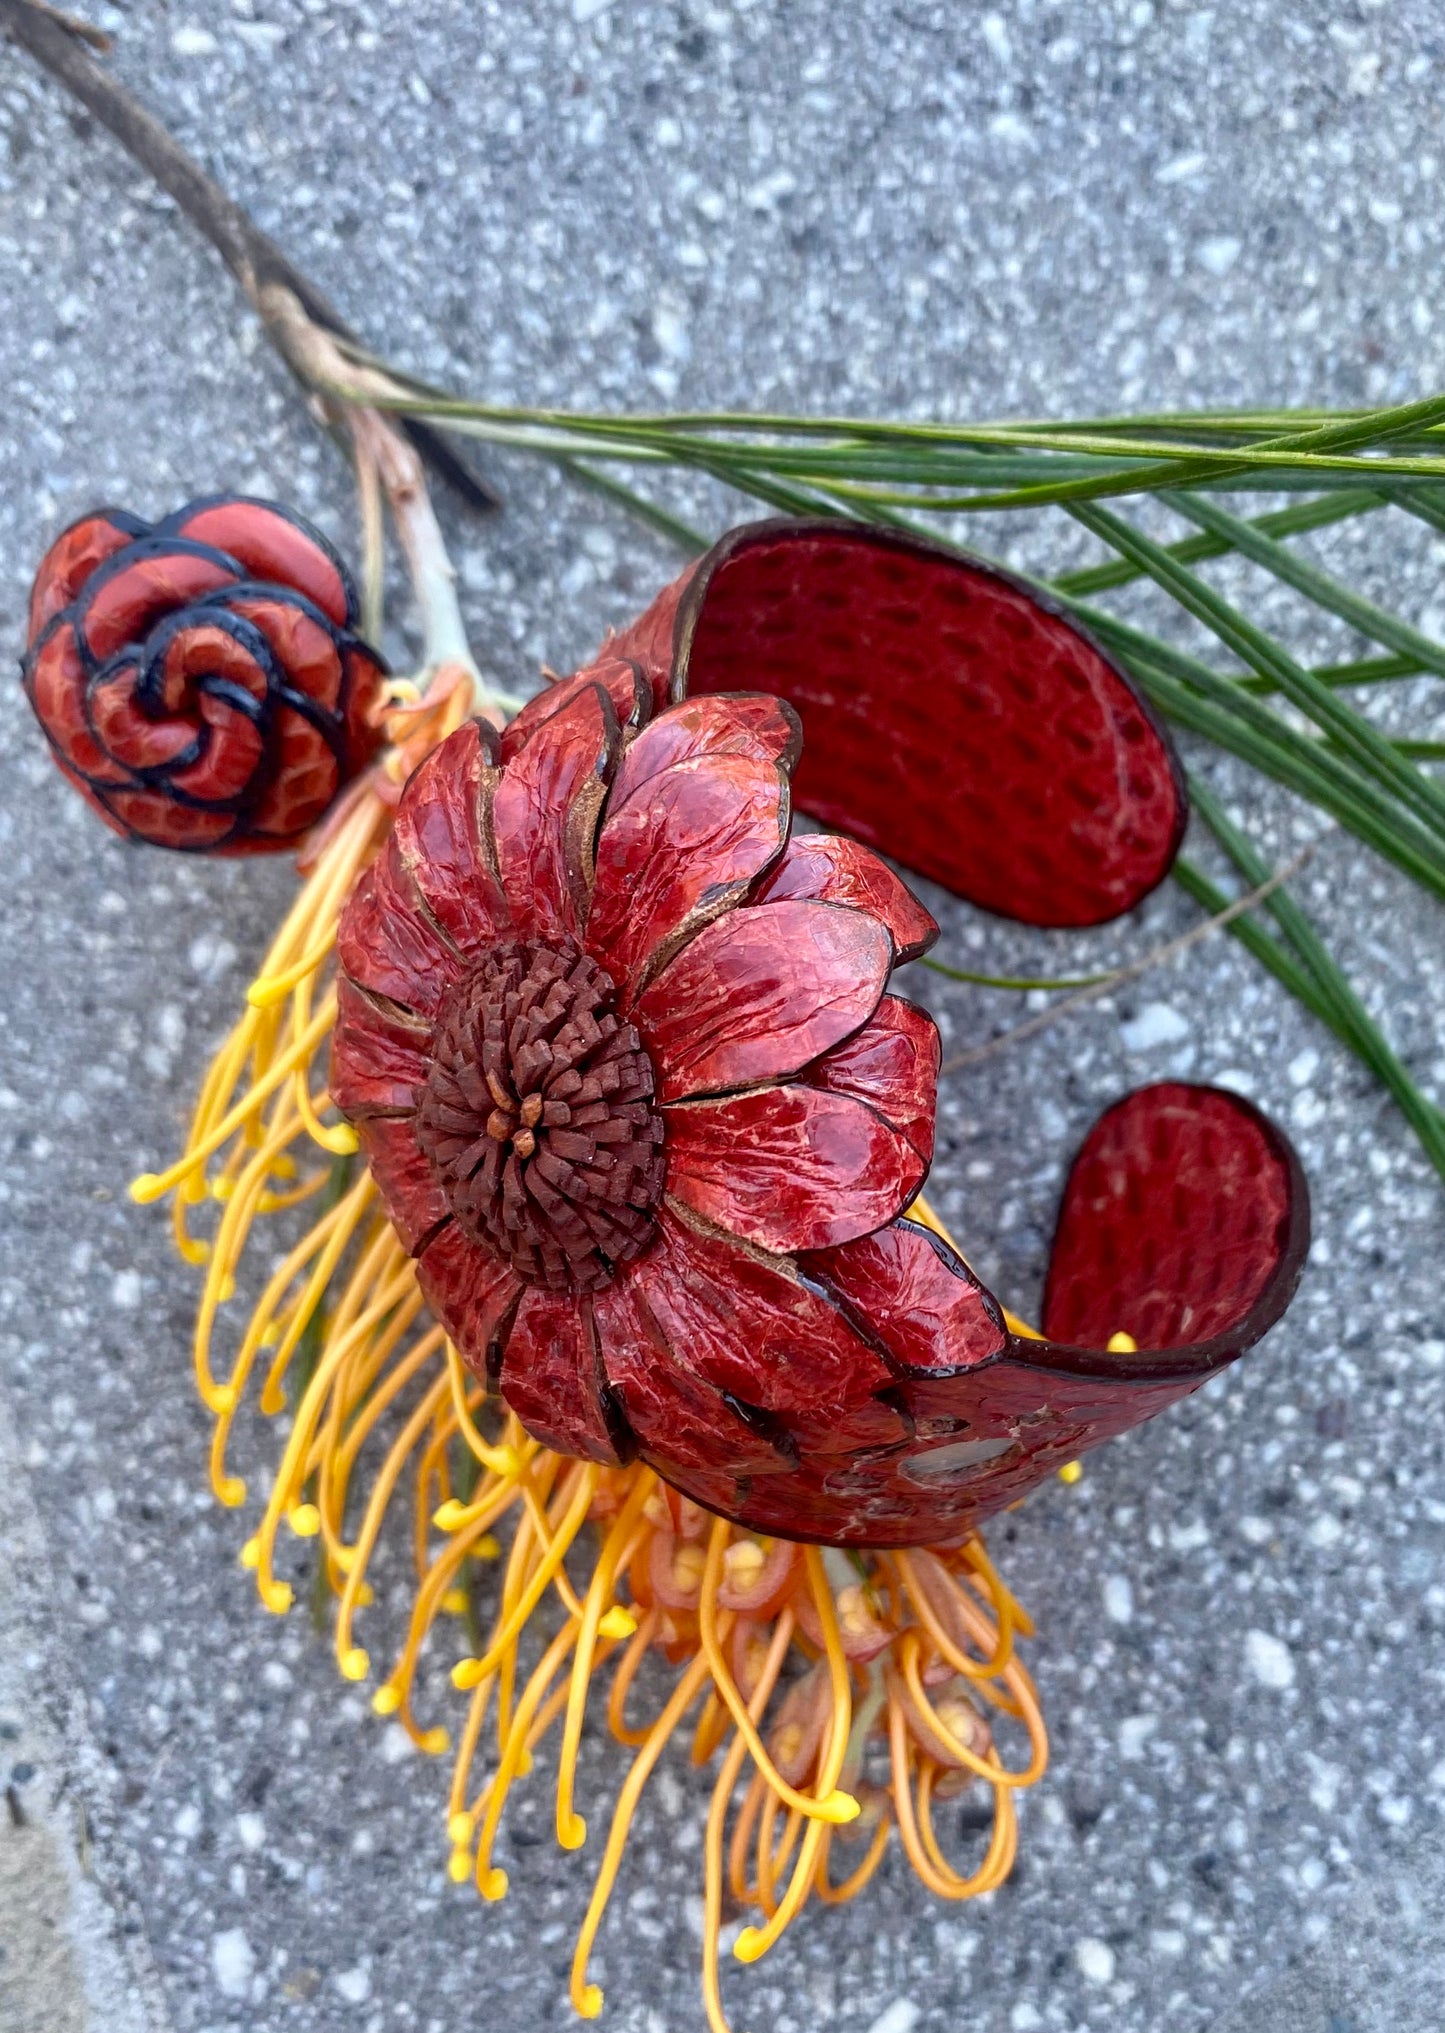 Snakeskin Flower Cuff - Red